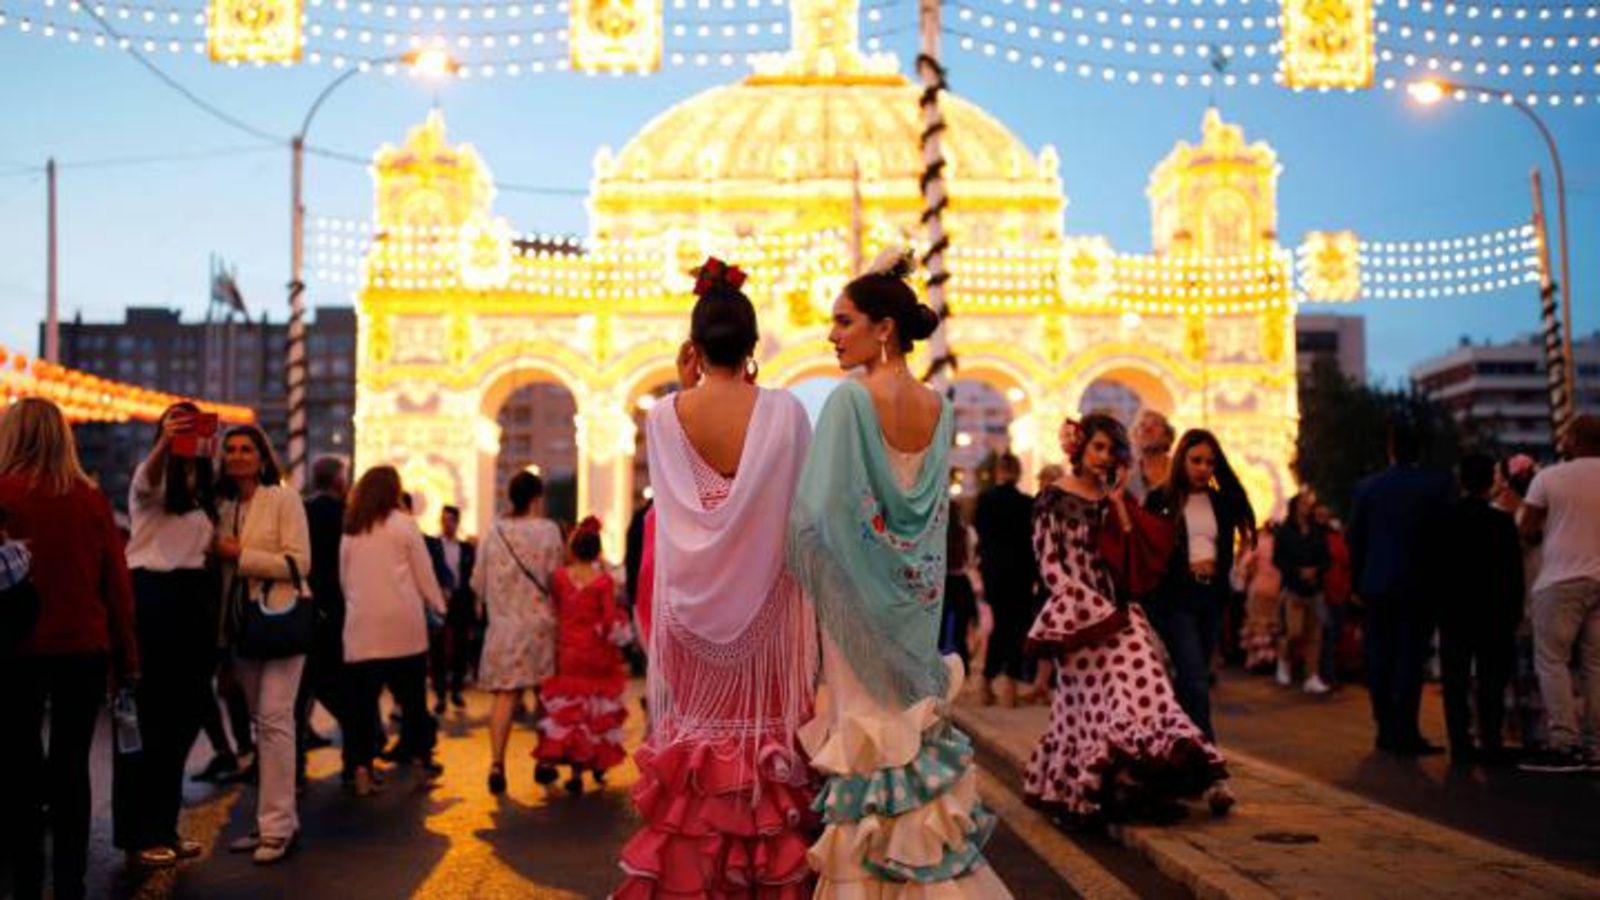 Feria de Abril in Seville 